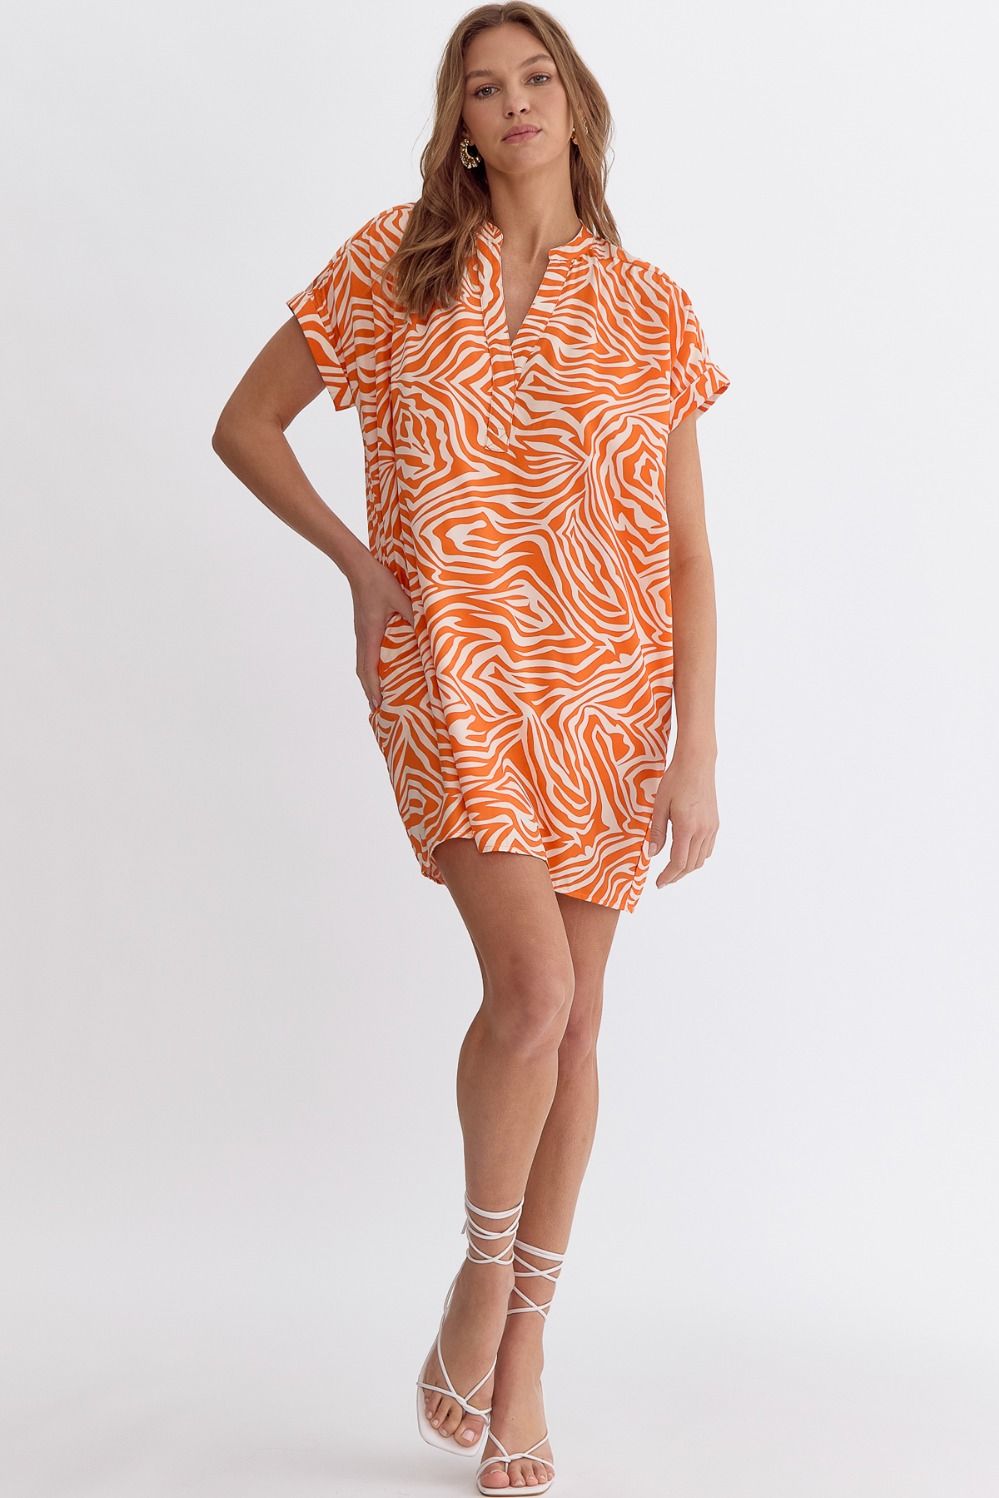 Orange Zebra Print Dress